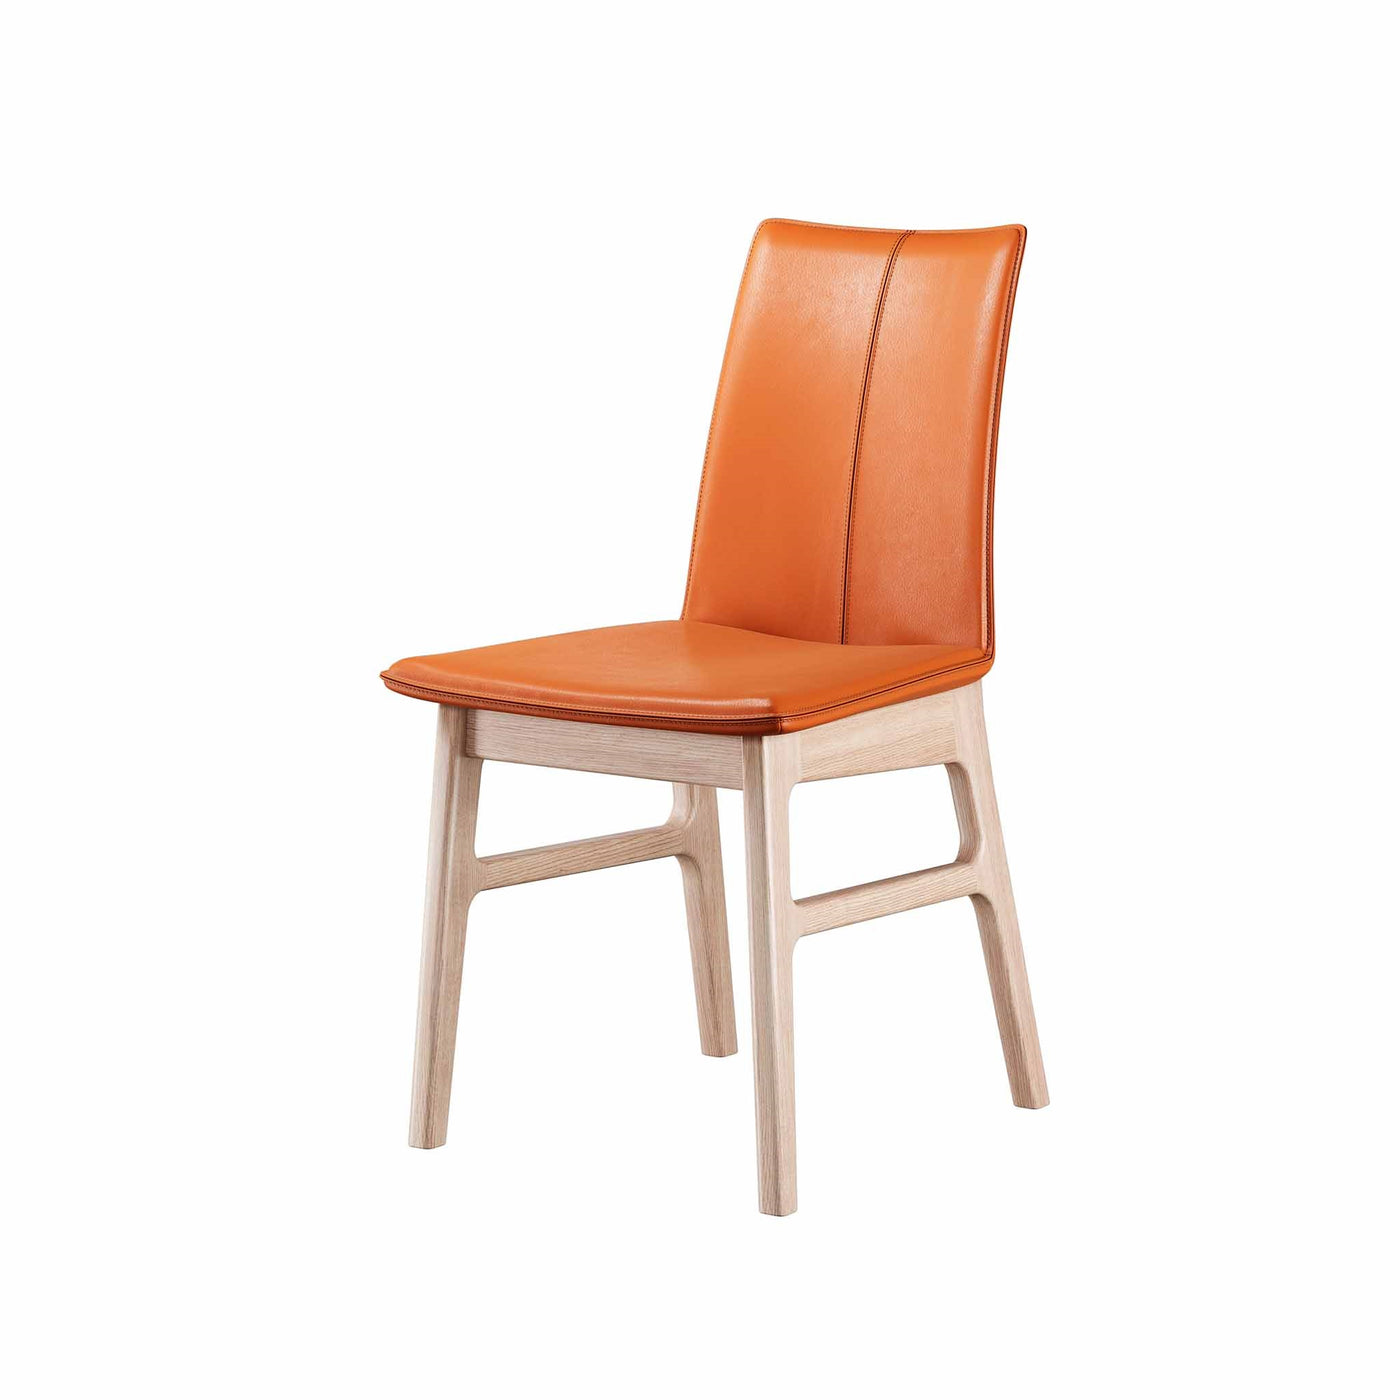 Sweetseat spisebordsstol fra Casø i hvidolieret eg med cognacfarvet læder